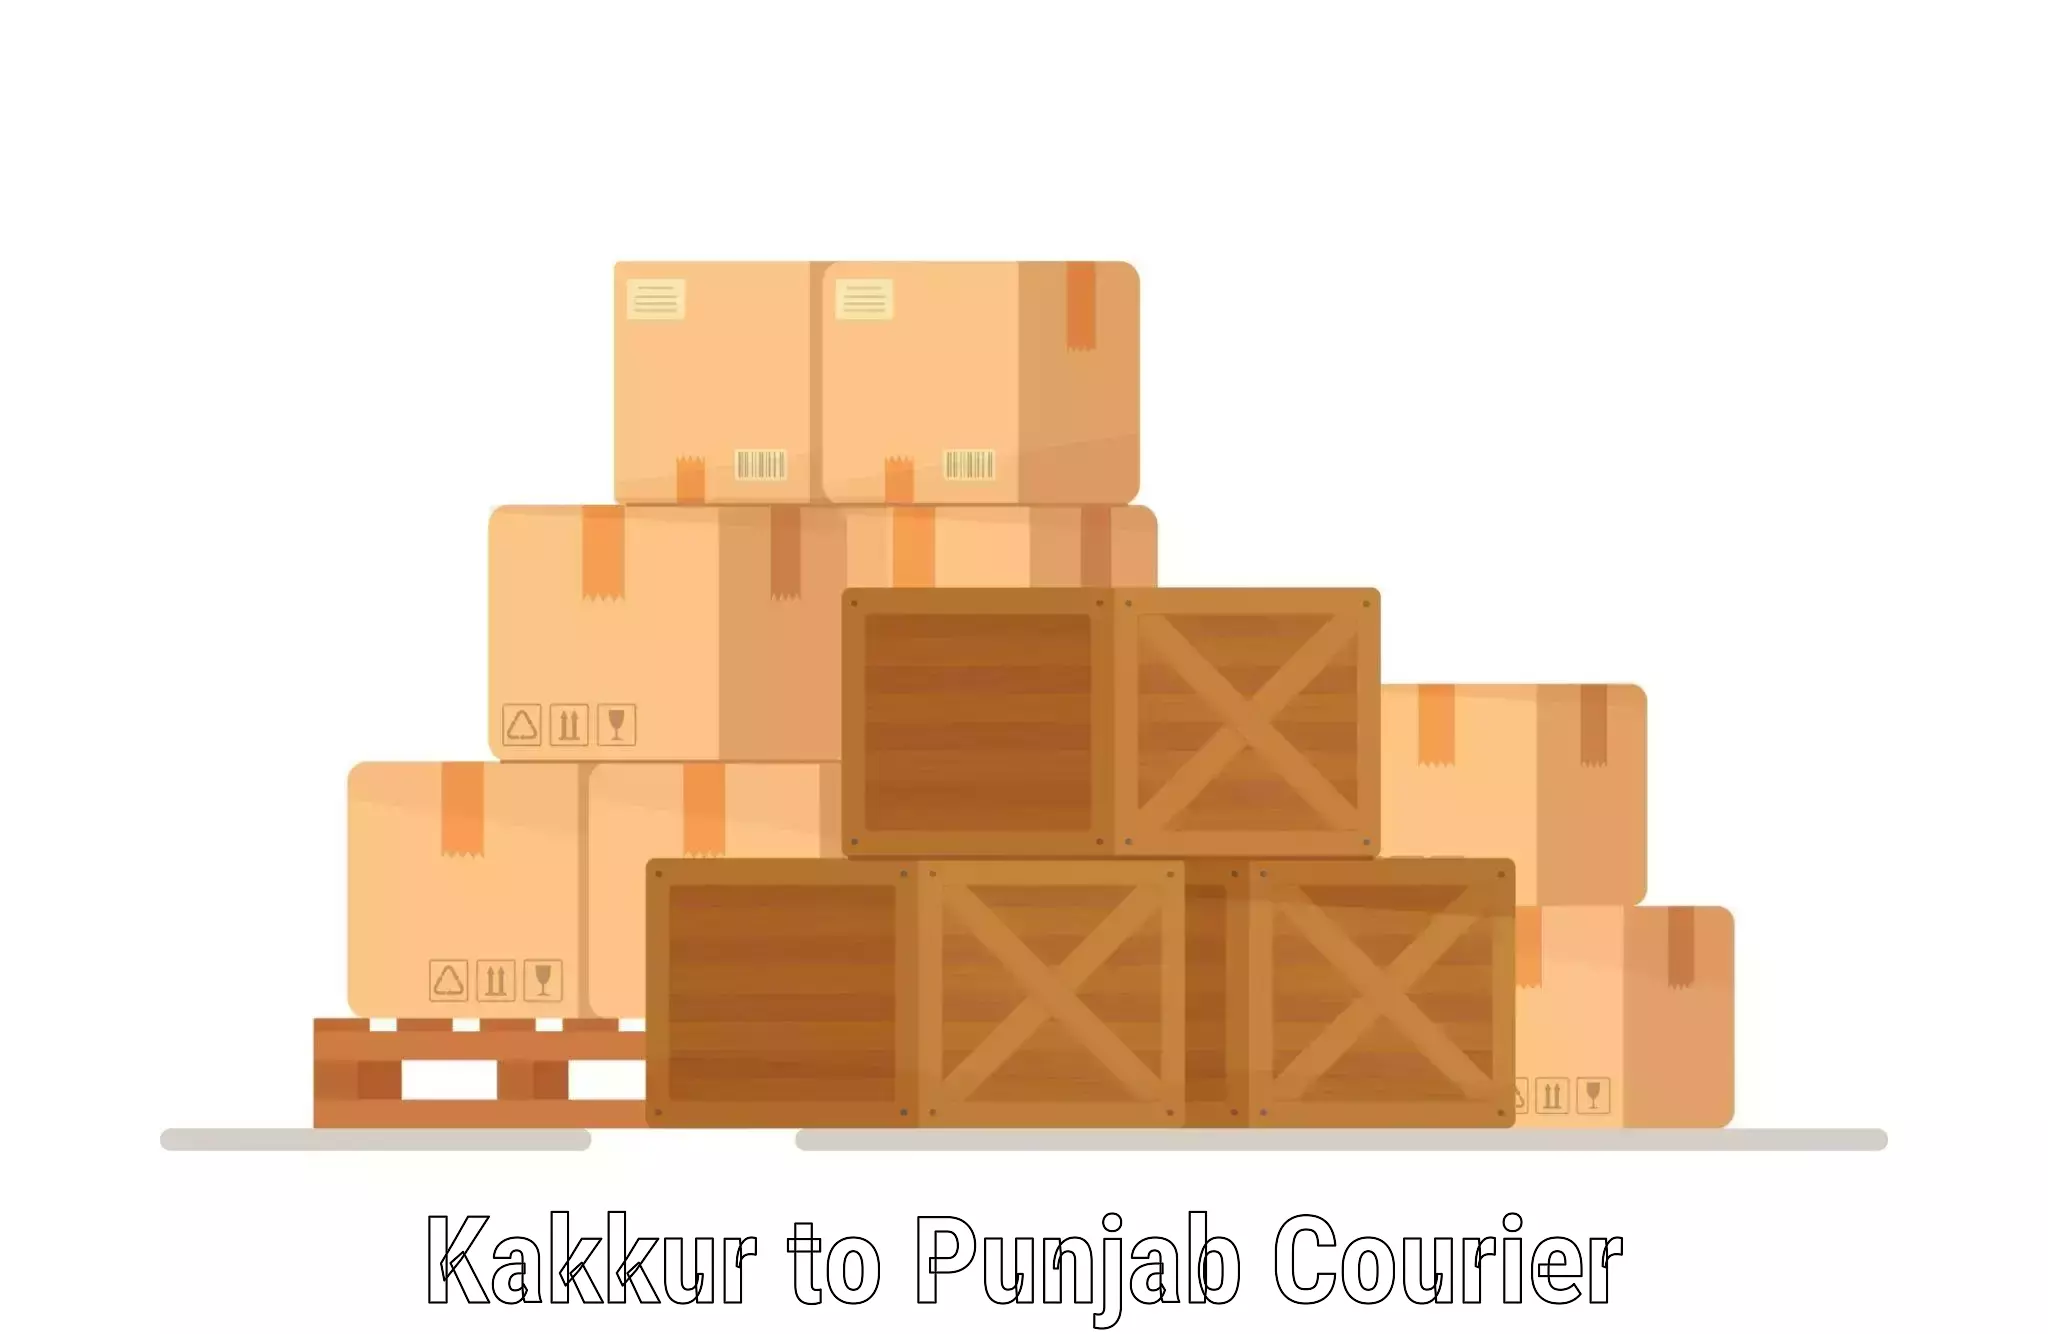 Personalized courier experiences Kakkur to Raikot